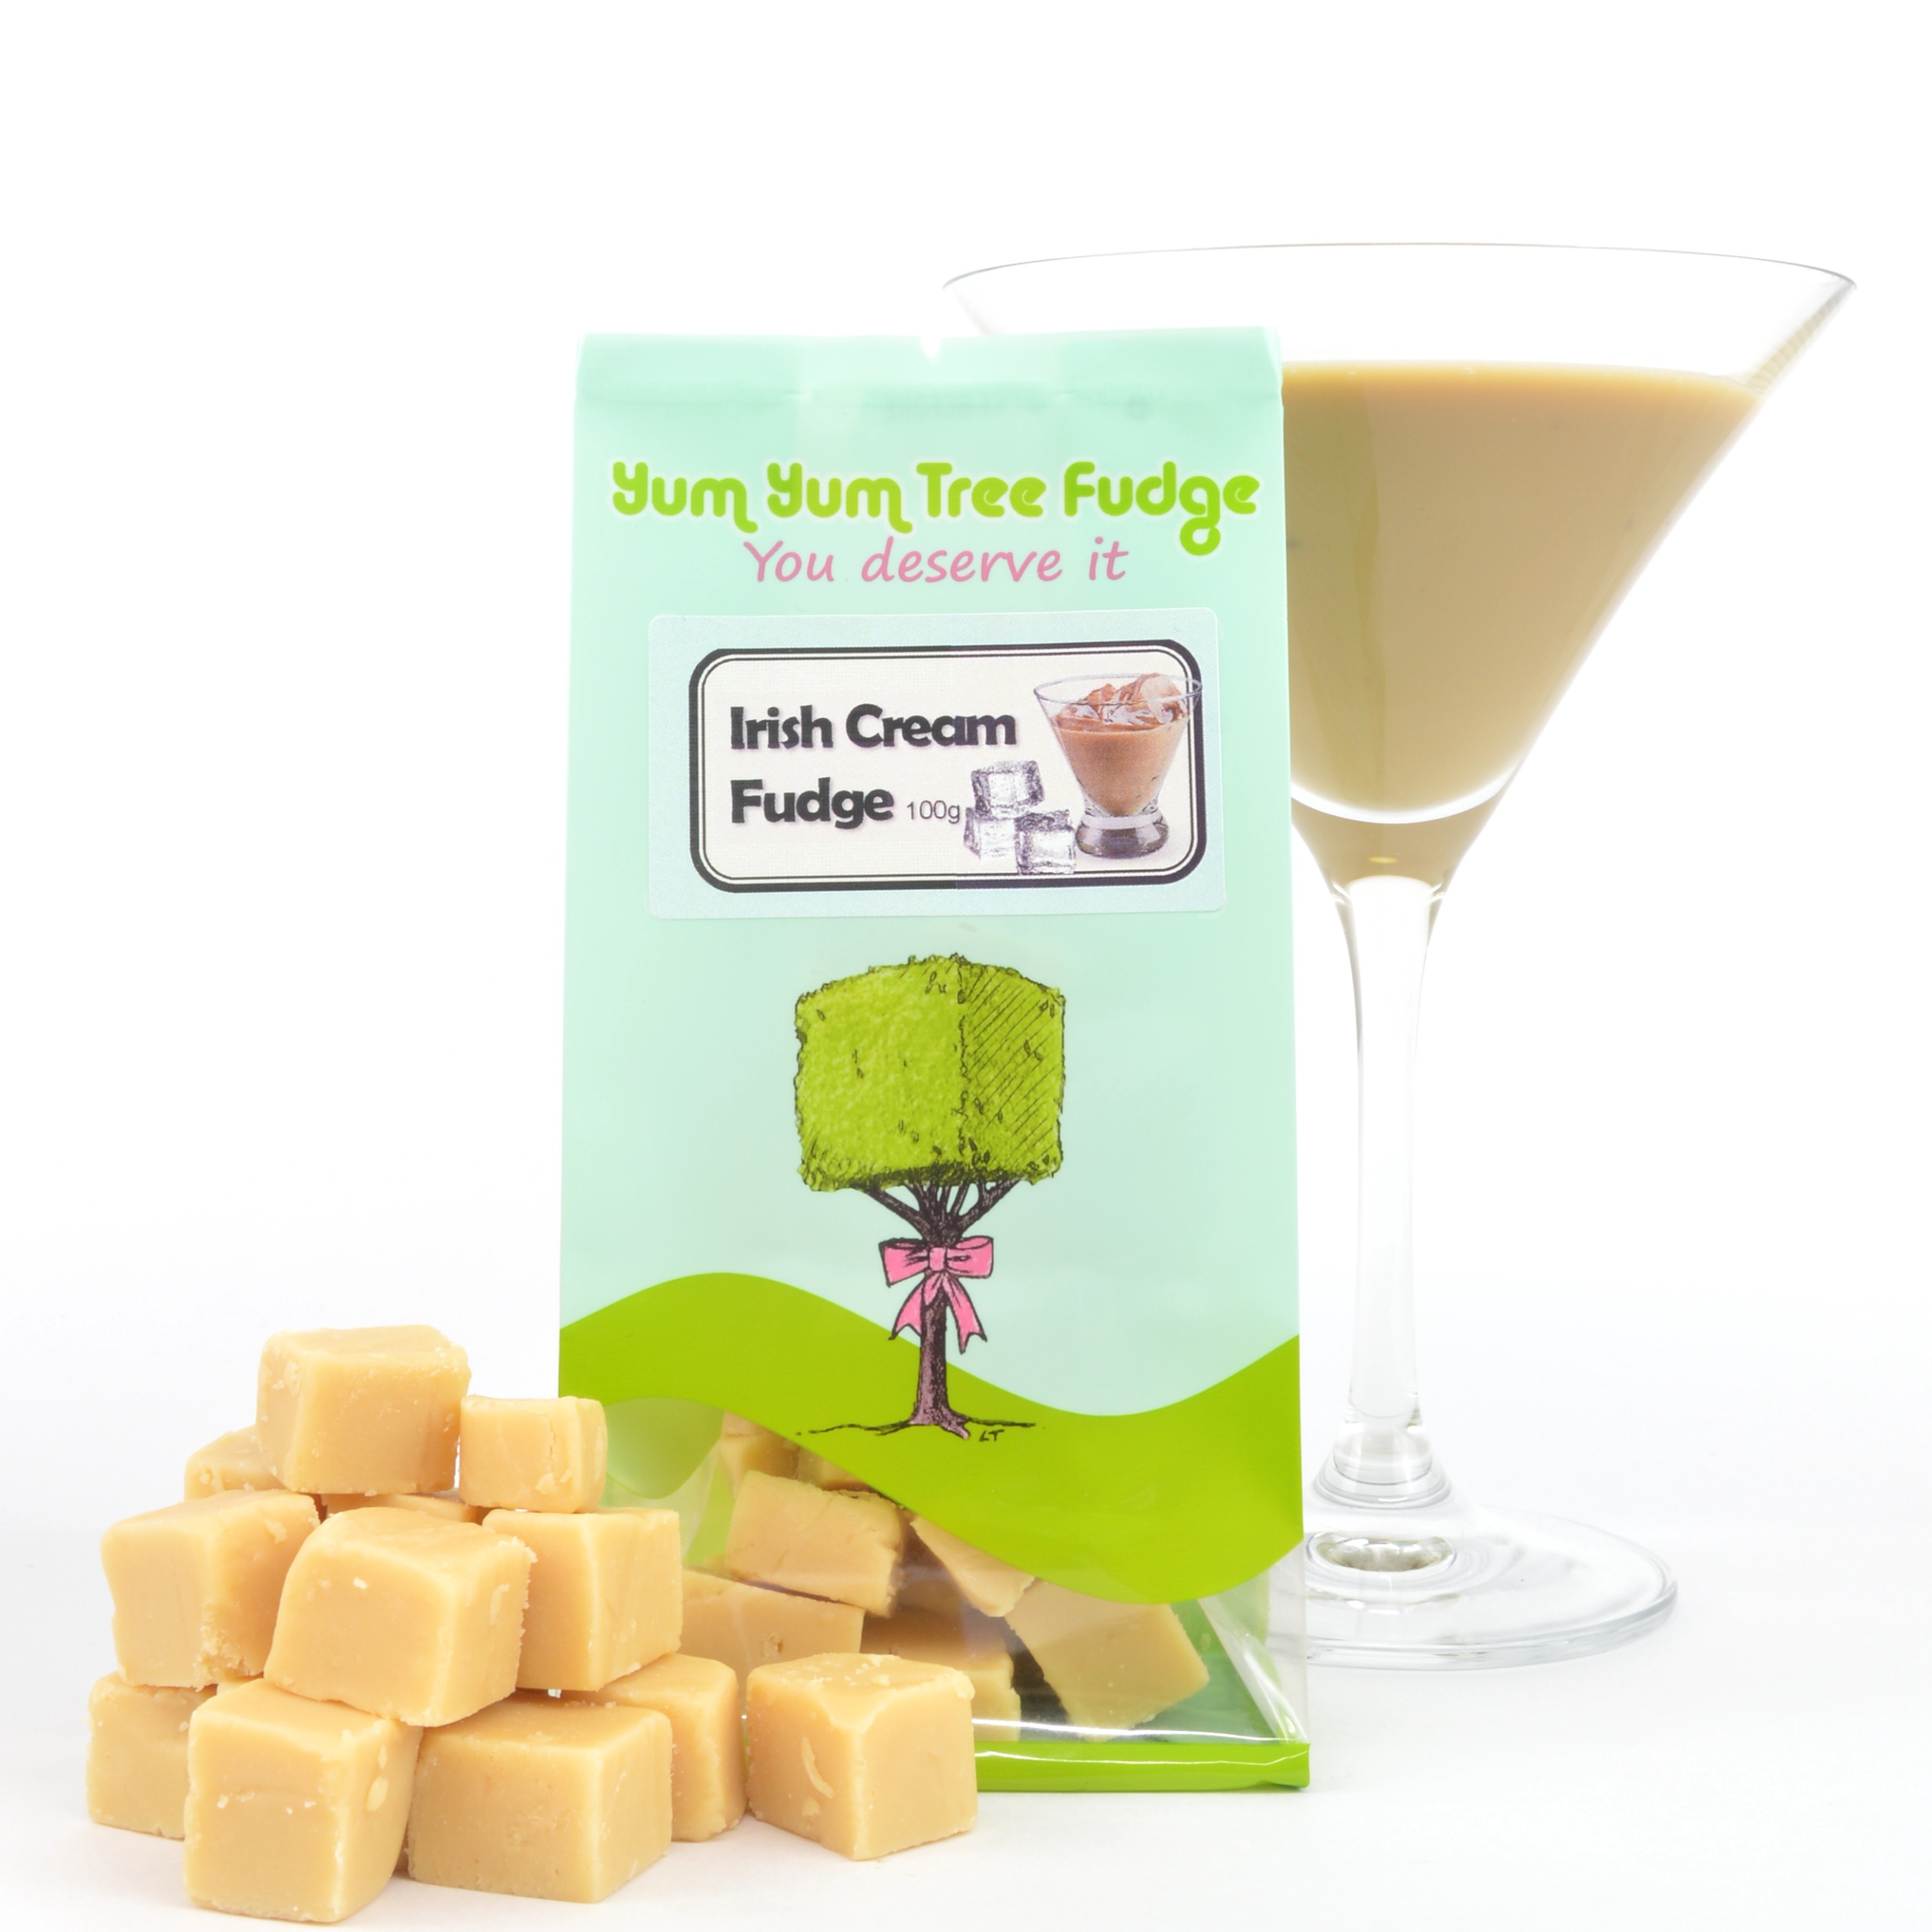 Irish Cream Fudge by Yum Yum Tree Fudge